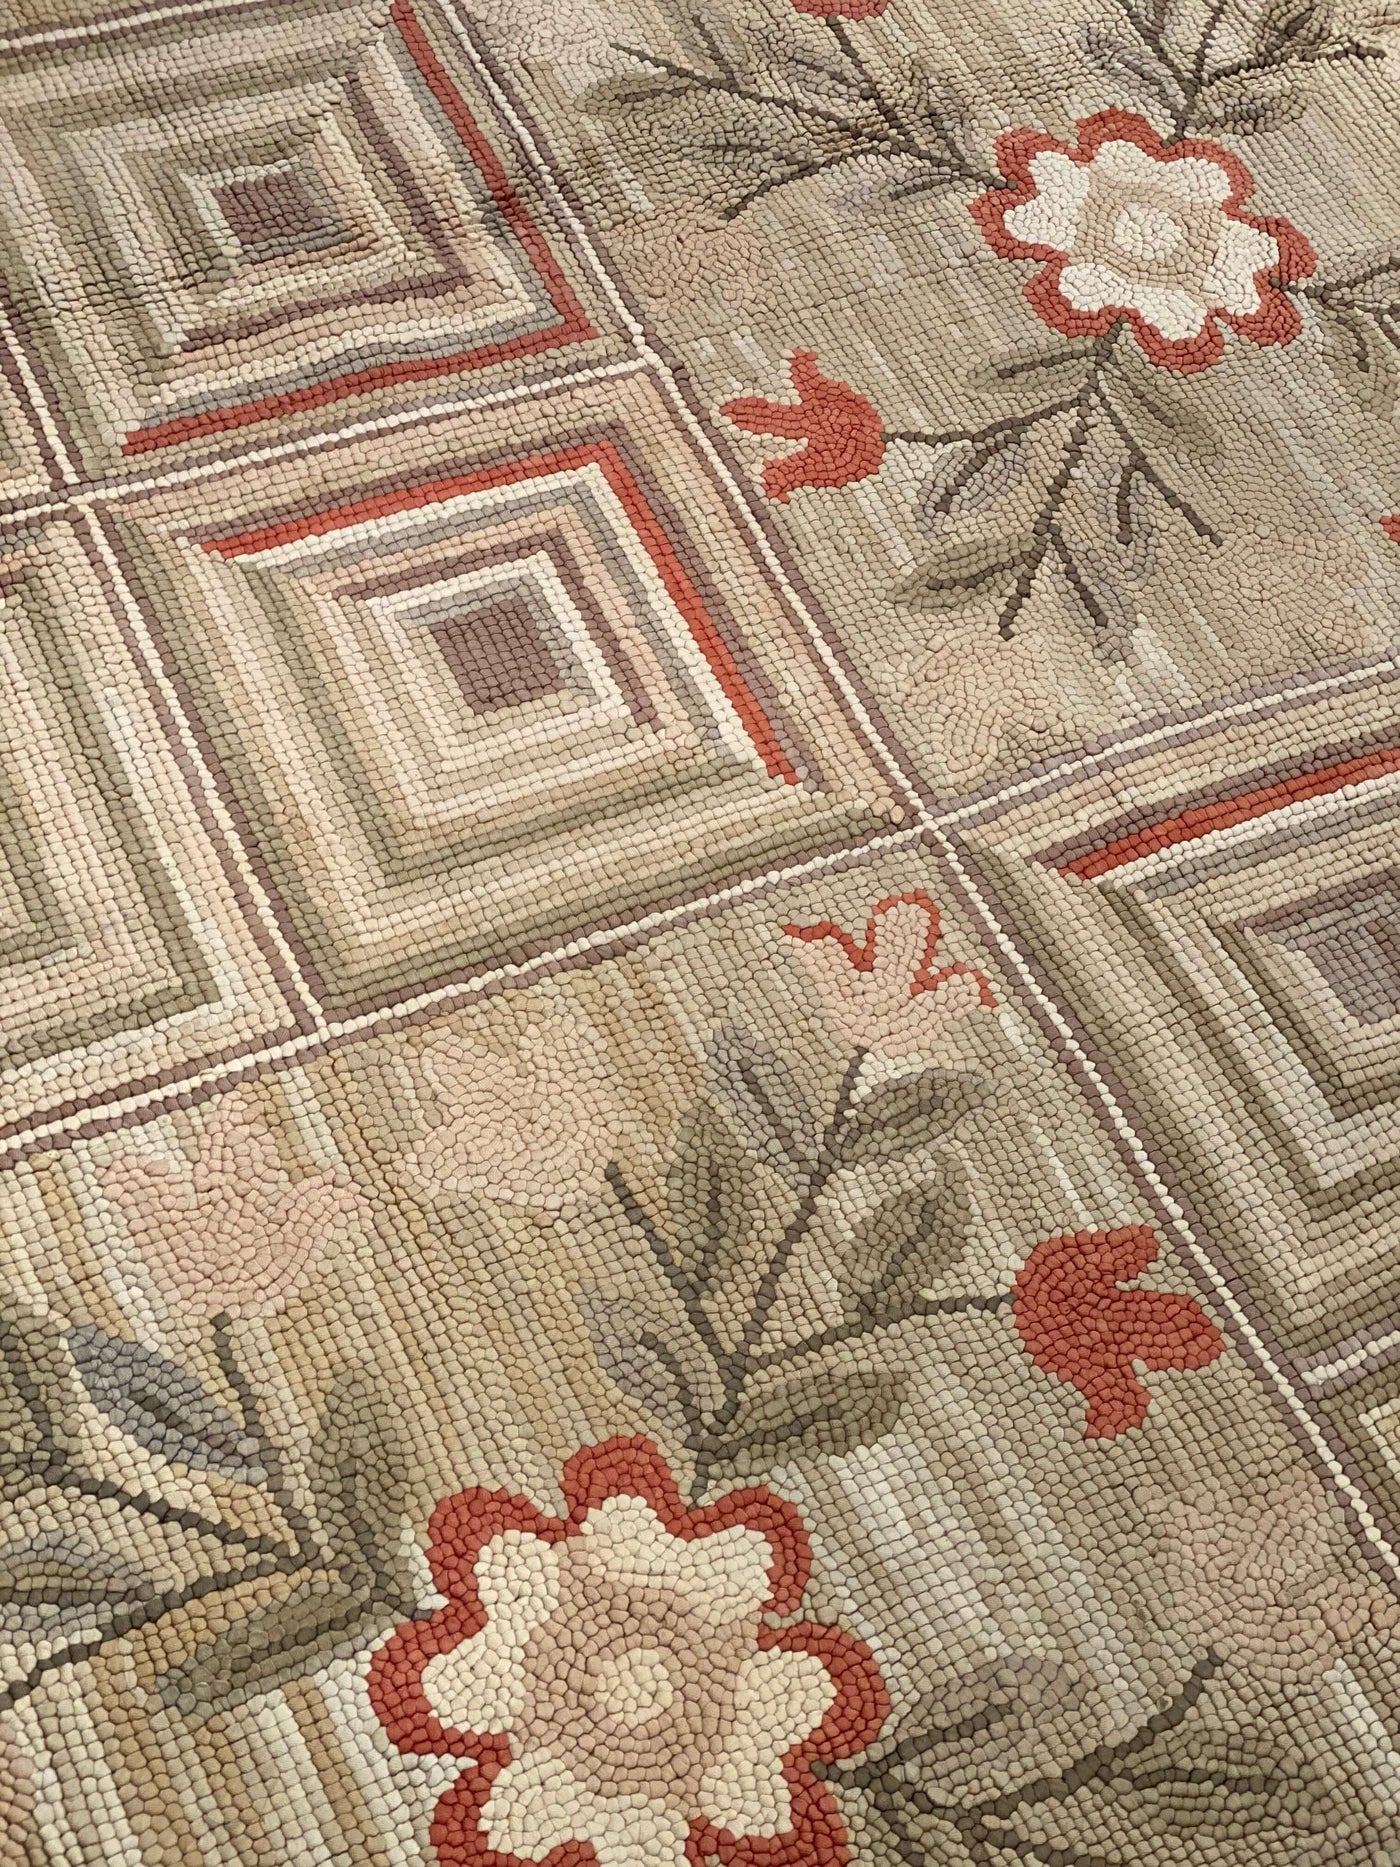 Beige Color Fine Antique Amrican Hook rug 10' X 14'